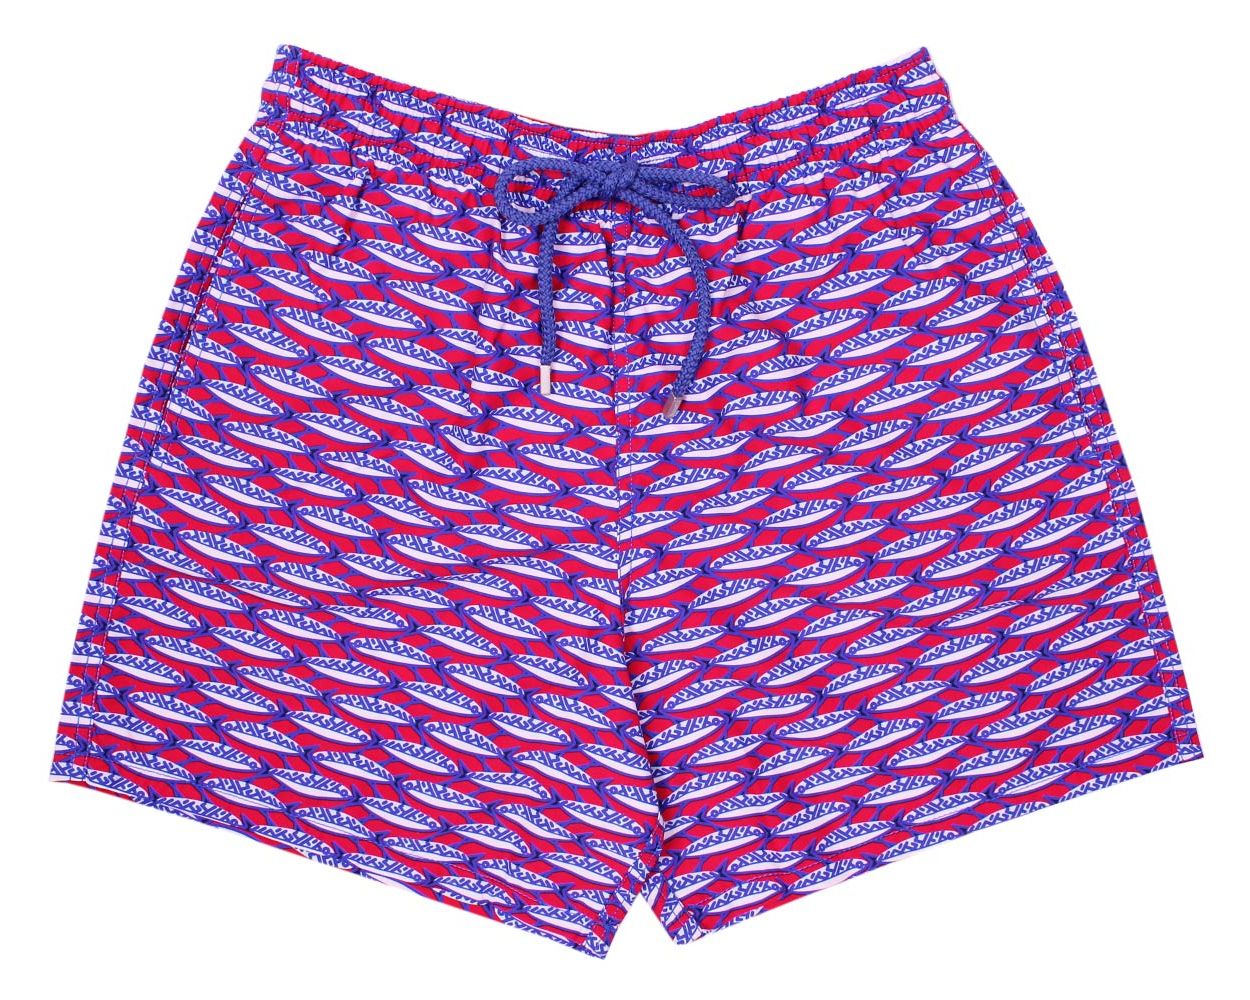 Vilebrequin Aquatic Print 'Marbella' Moorea Fit Swim Shorts